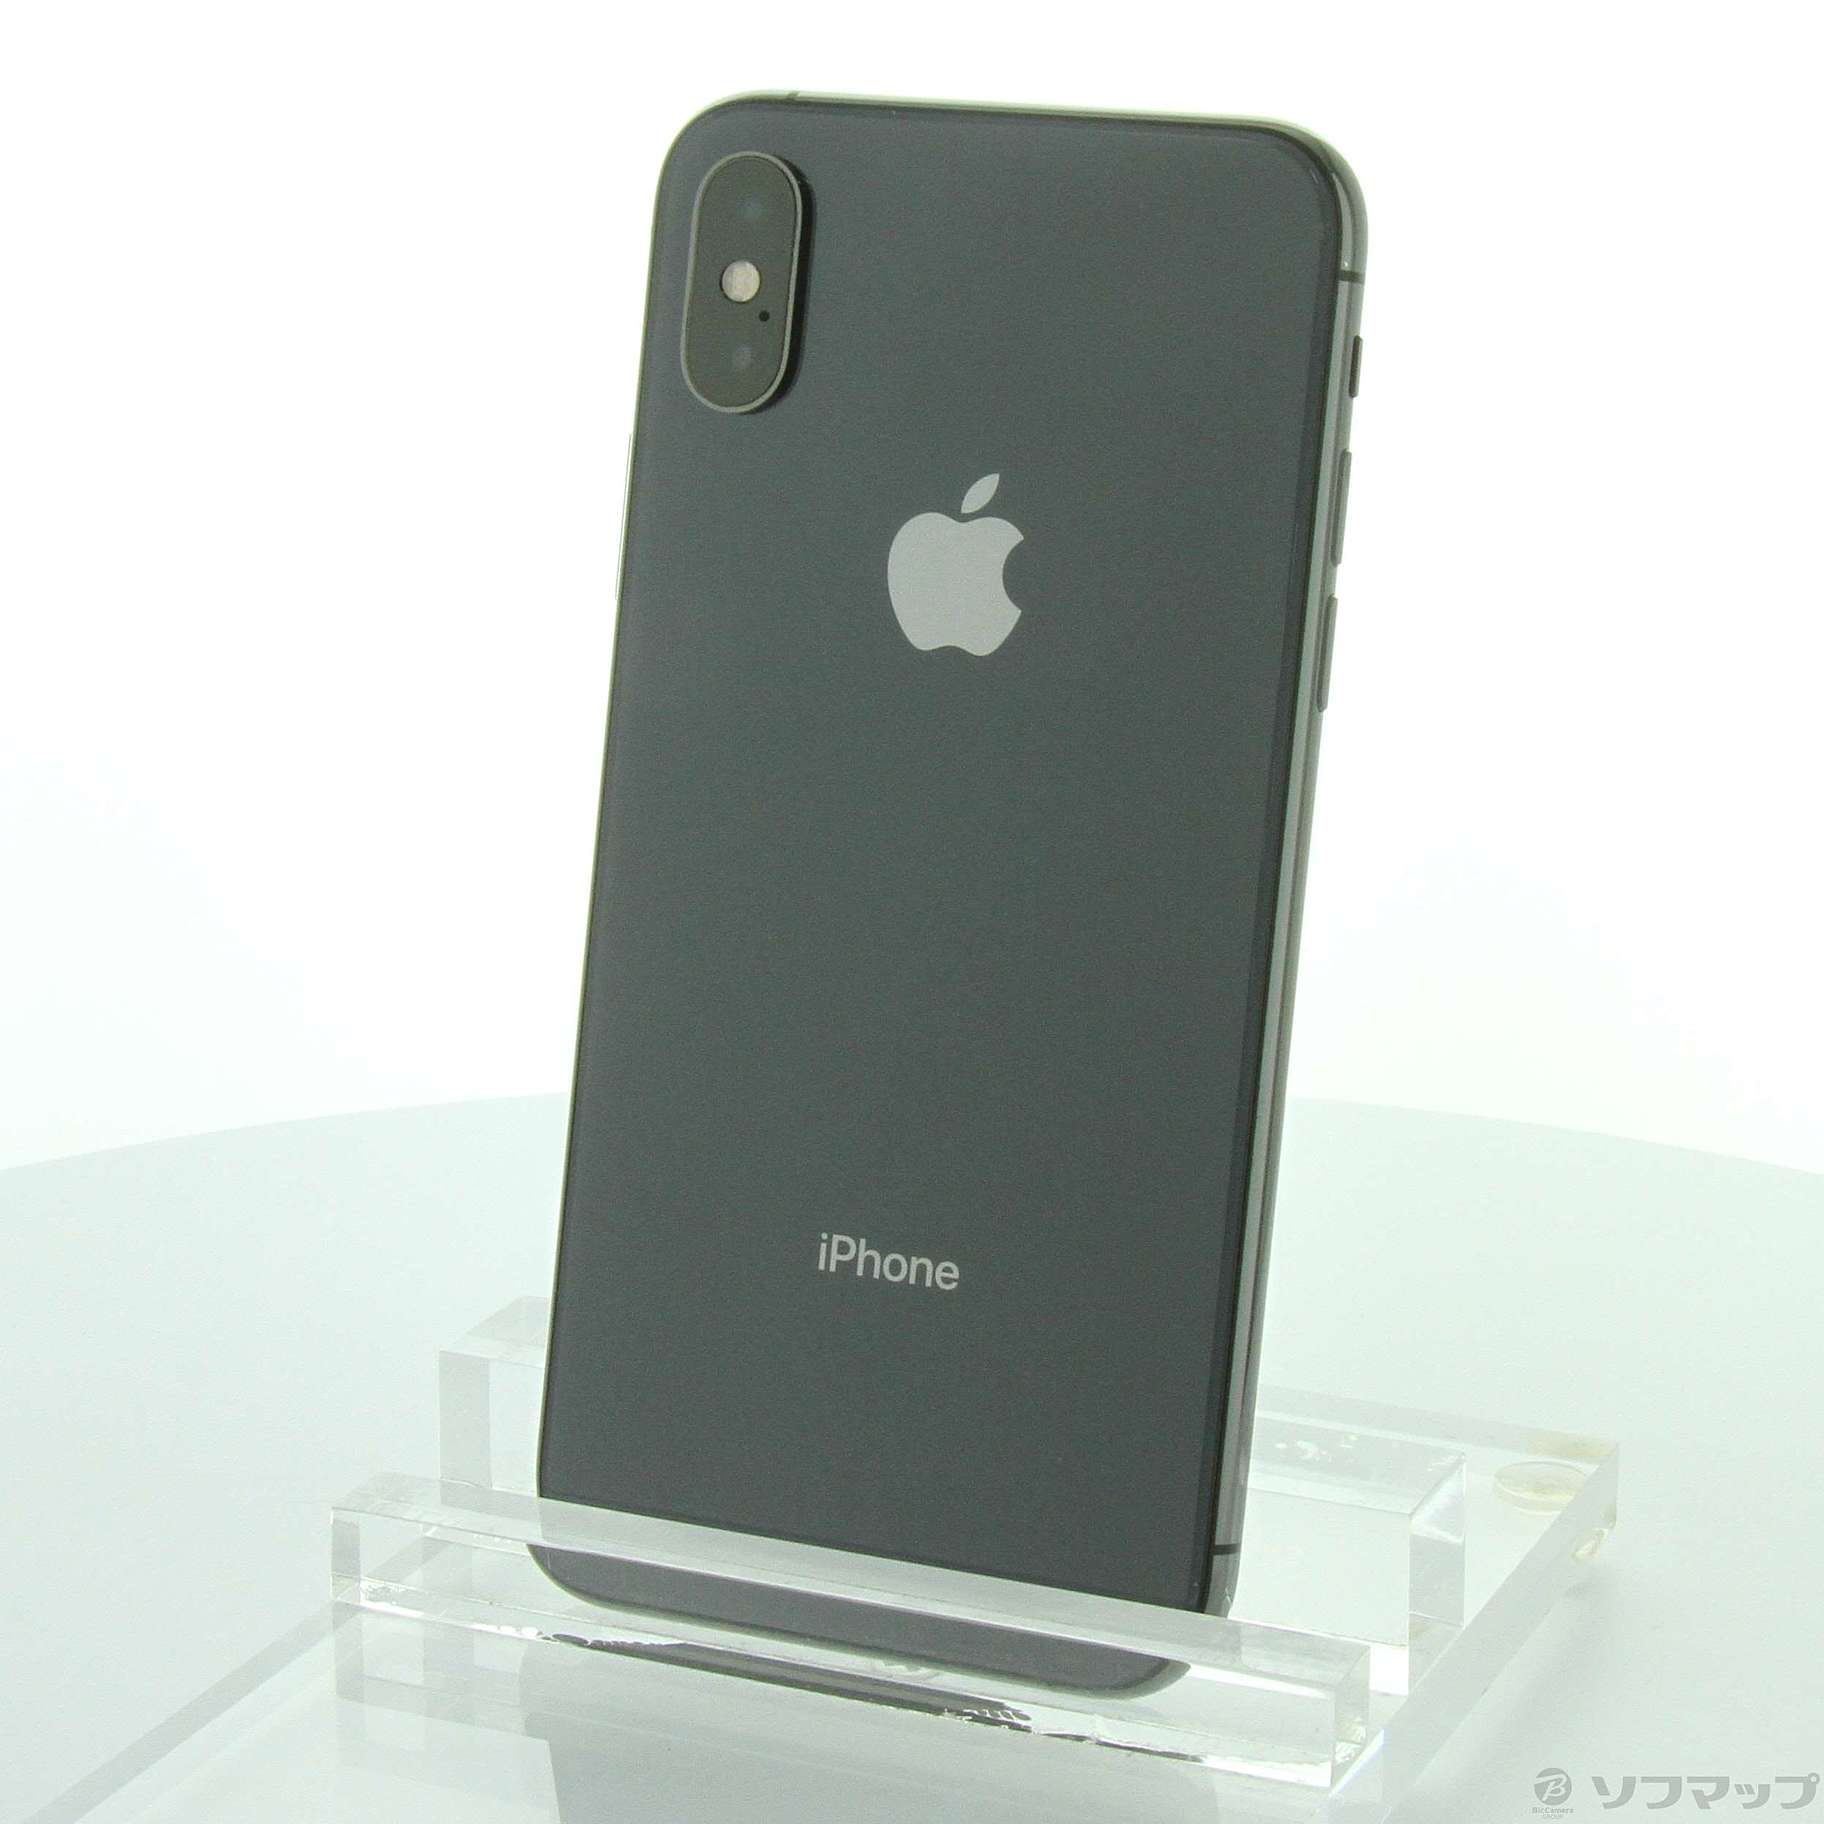 9,702円iPhone Xs Max Space Gray 256 GB Softbank